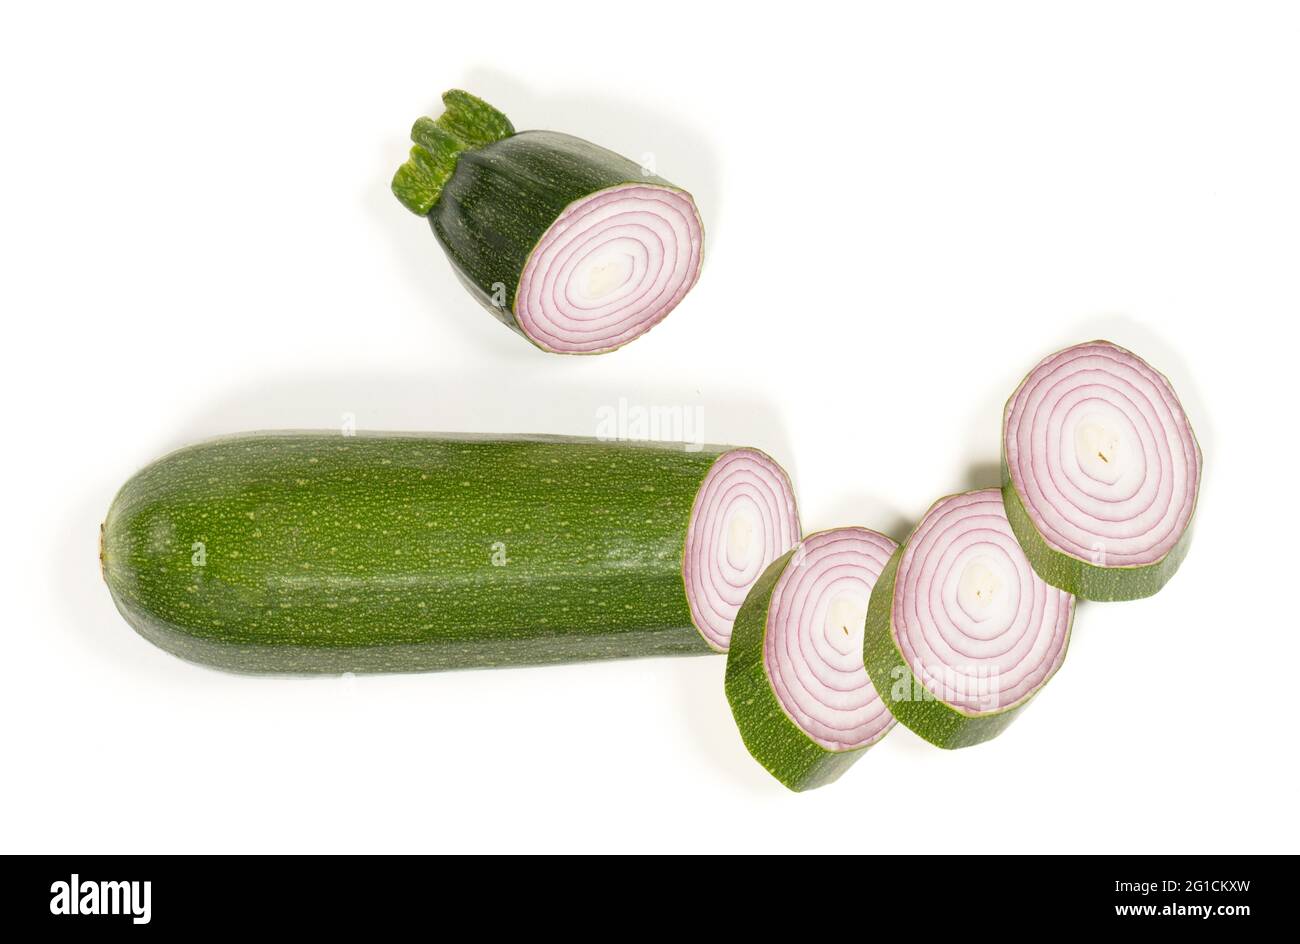 Oignon courgette en tranches dans une courgette - légumes bizarres - Isolé sur blanc Banque D'Images